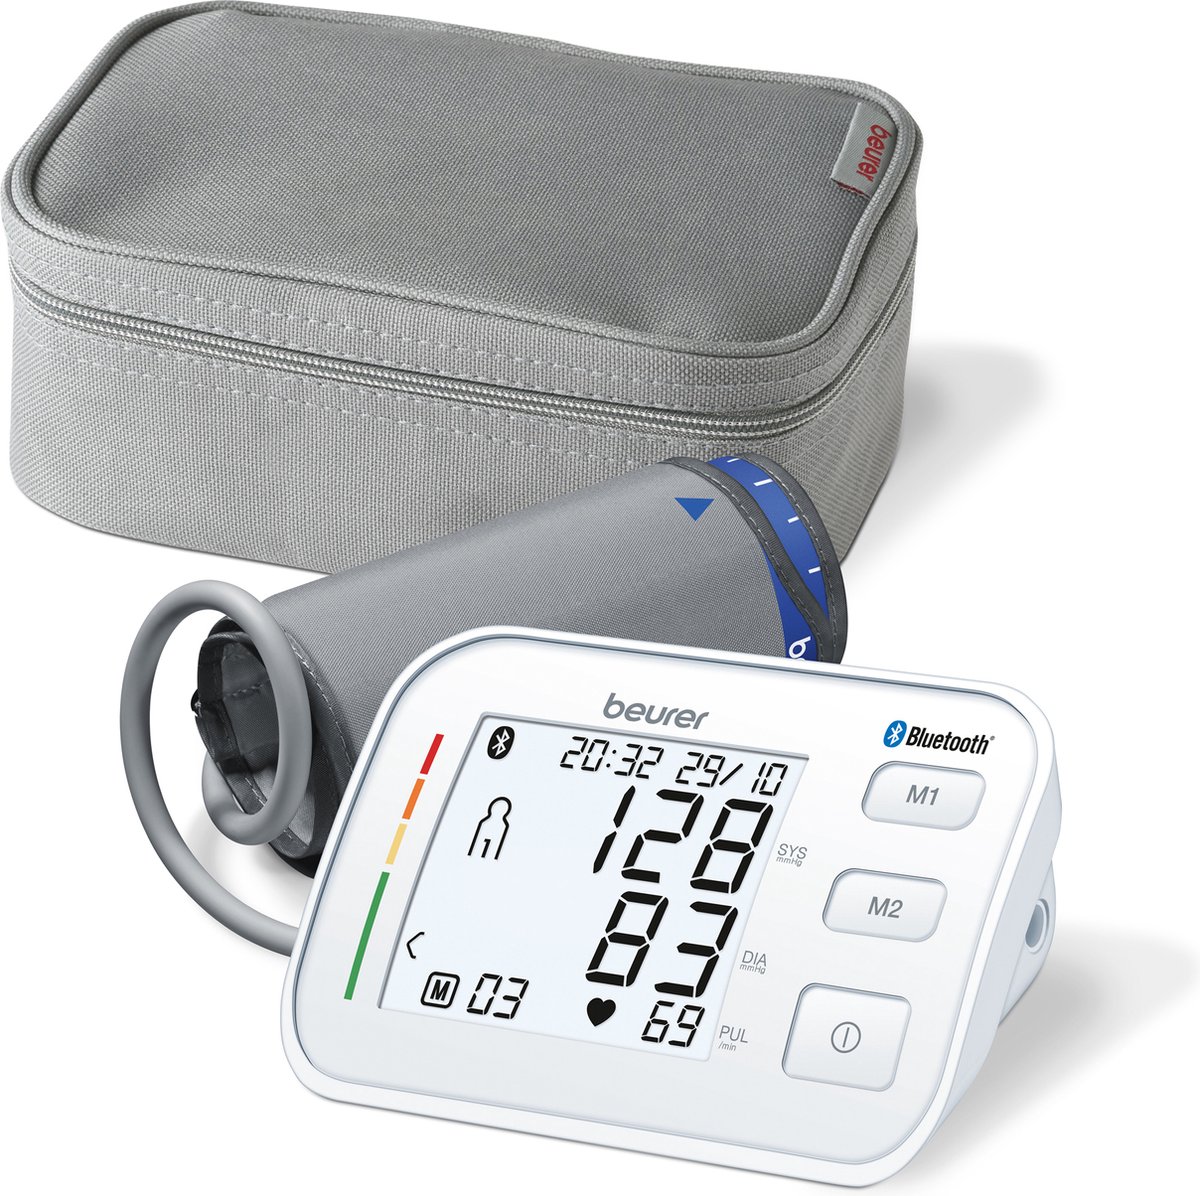 Beurer BM 57 Bluetooth® Bloeddrukmeter bovenarm - HealthManager Pro app - Groot manchet tot 43 cm - Onregelmatige hartslag - Risico-indicator - 2 Gebruikers - Verlicht XL display - Automatische uitschakeling - 5 Jaar garantie - Beurer